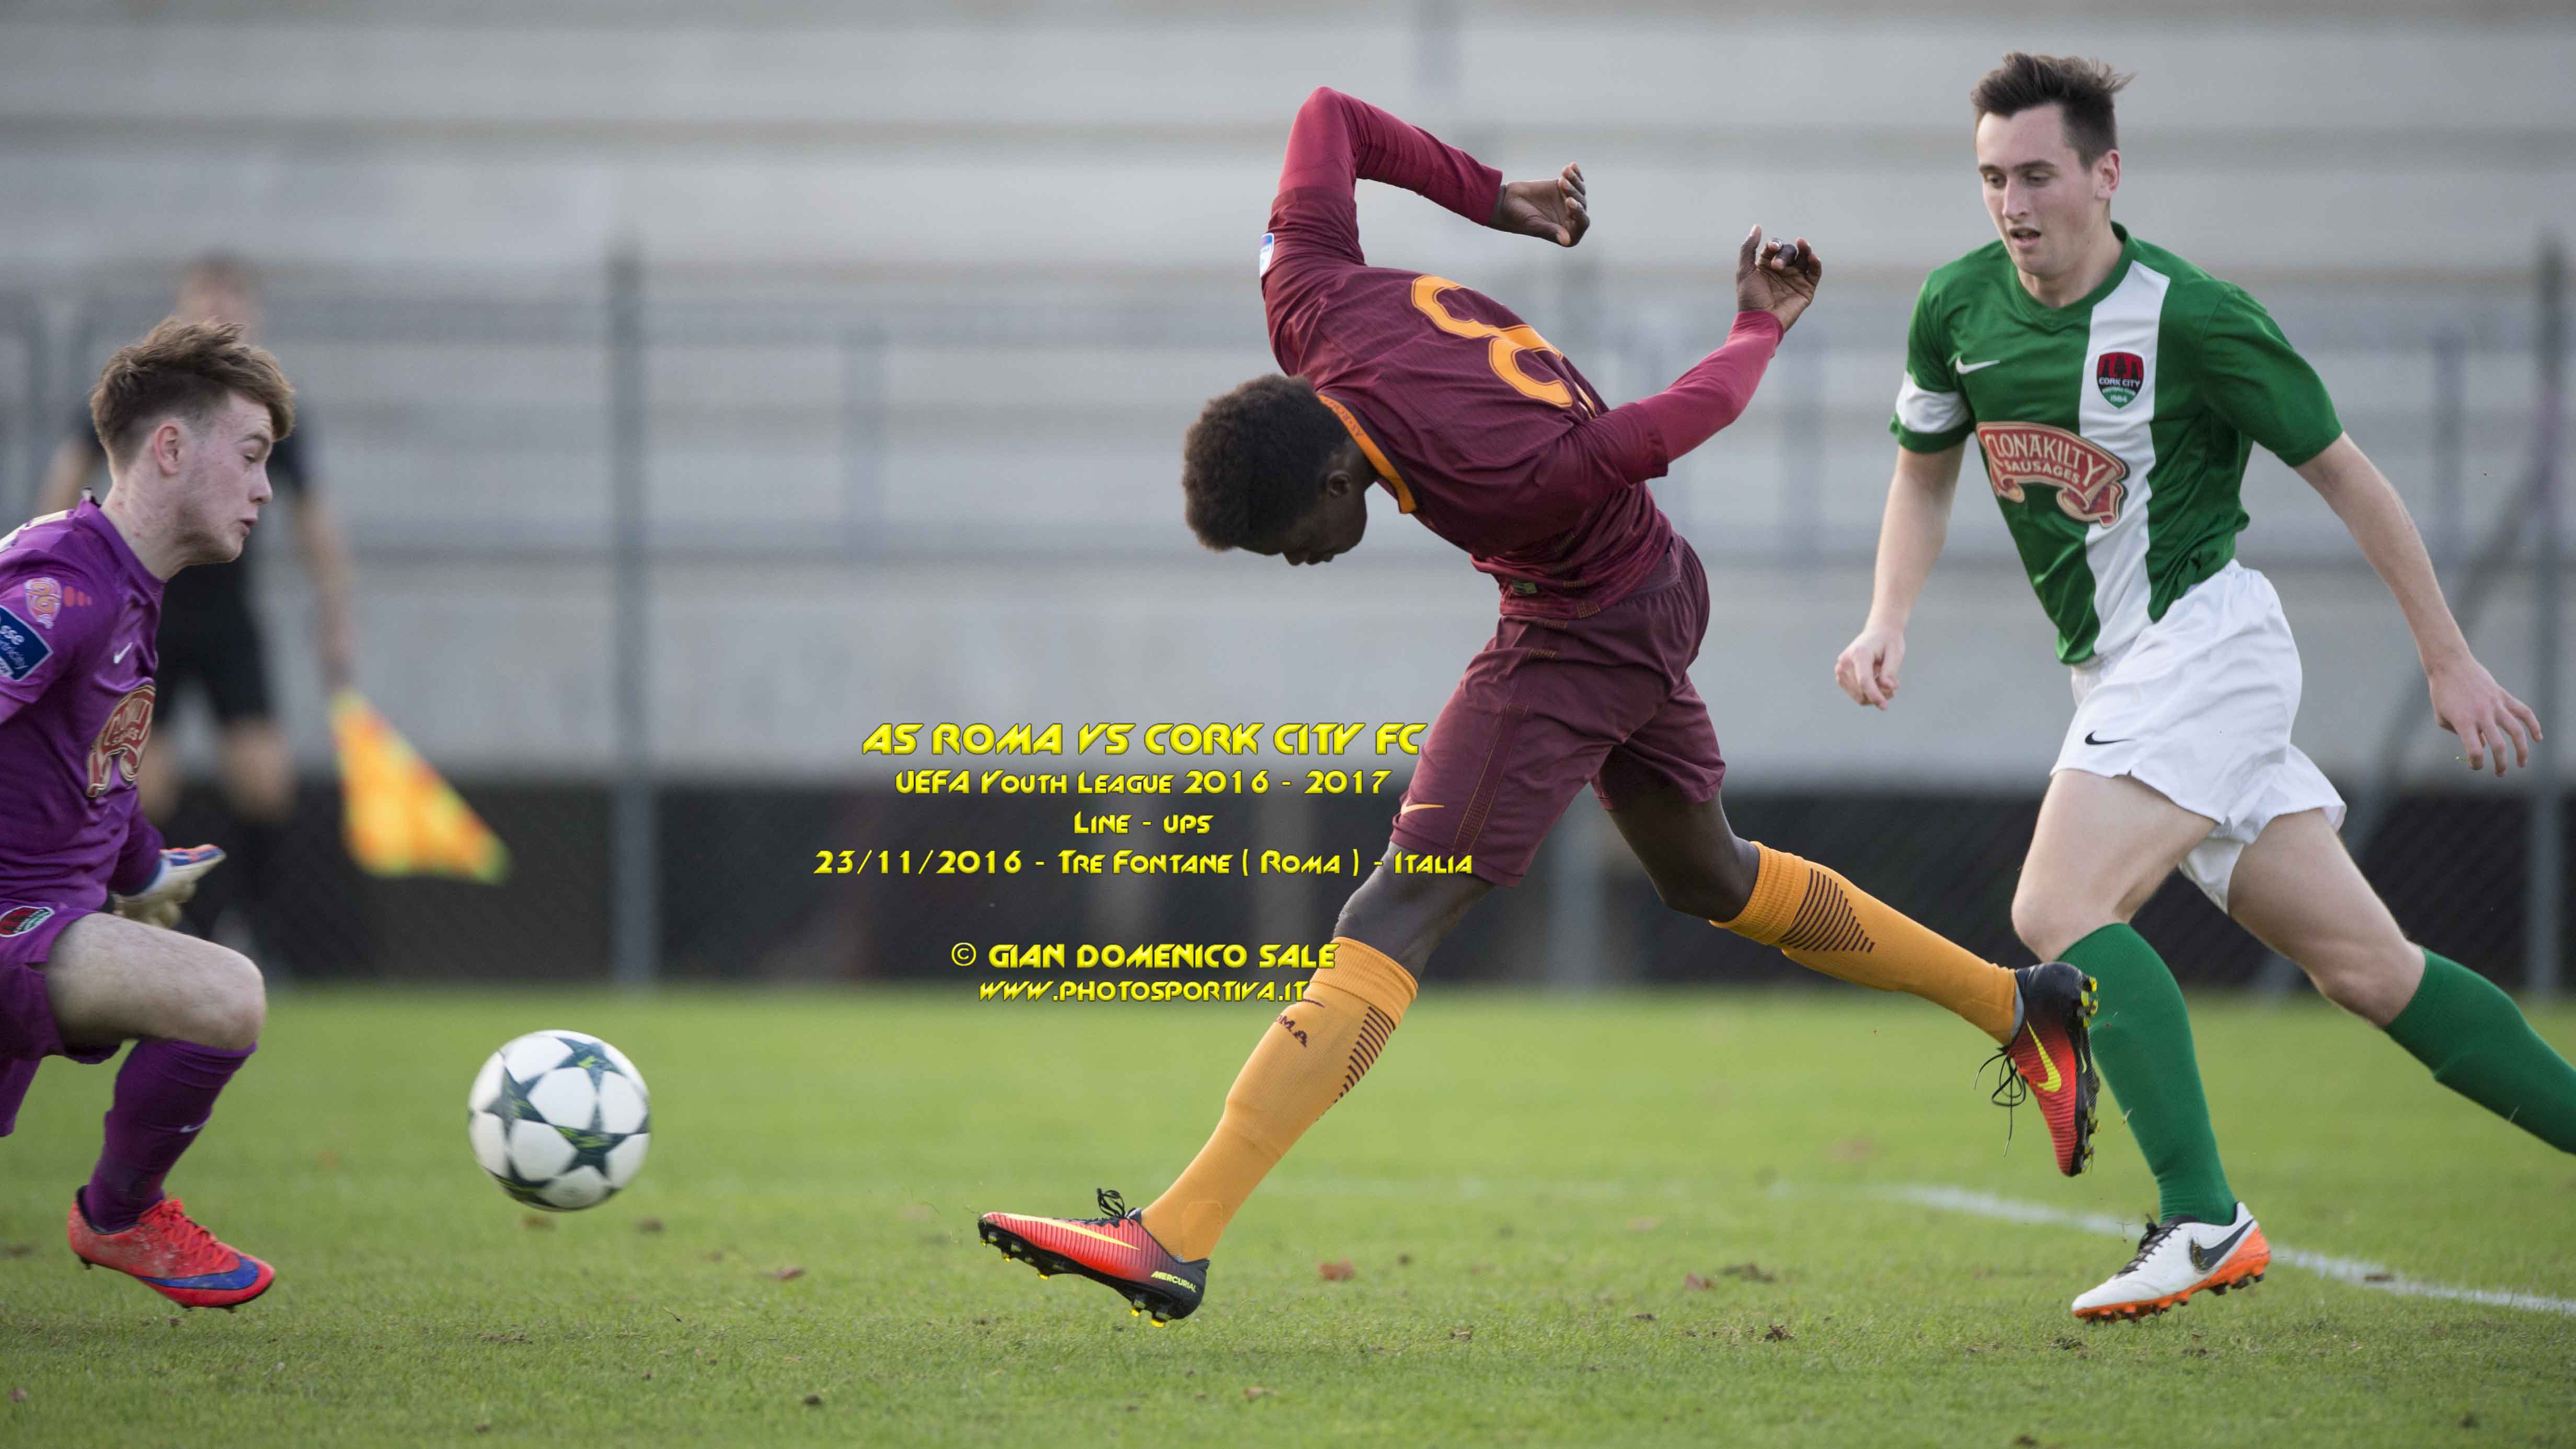 Youth League, debutto vincente per la Roma al “Tre fontane”, battuto 1-0 il Cork e passaggio agli ottavi